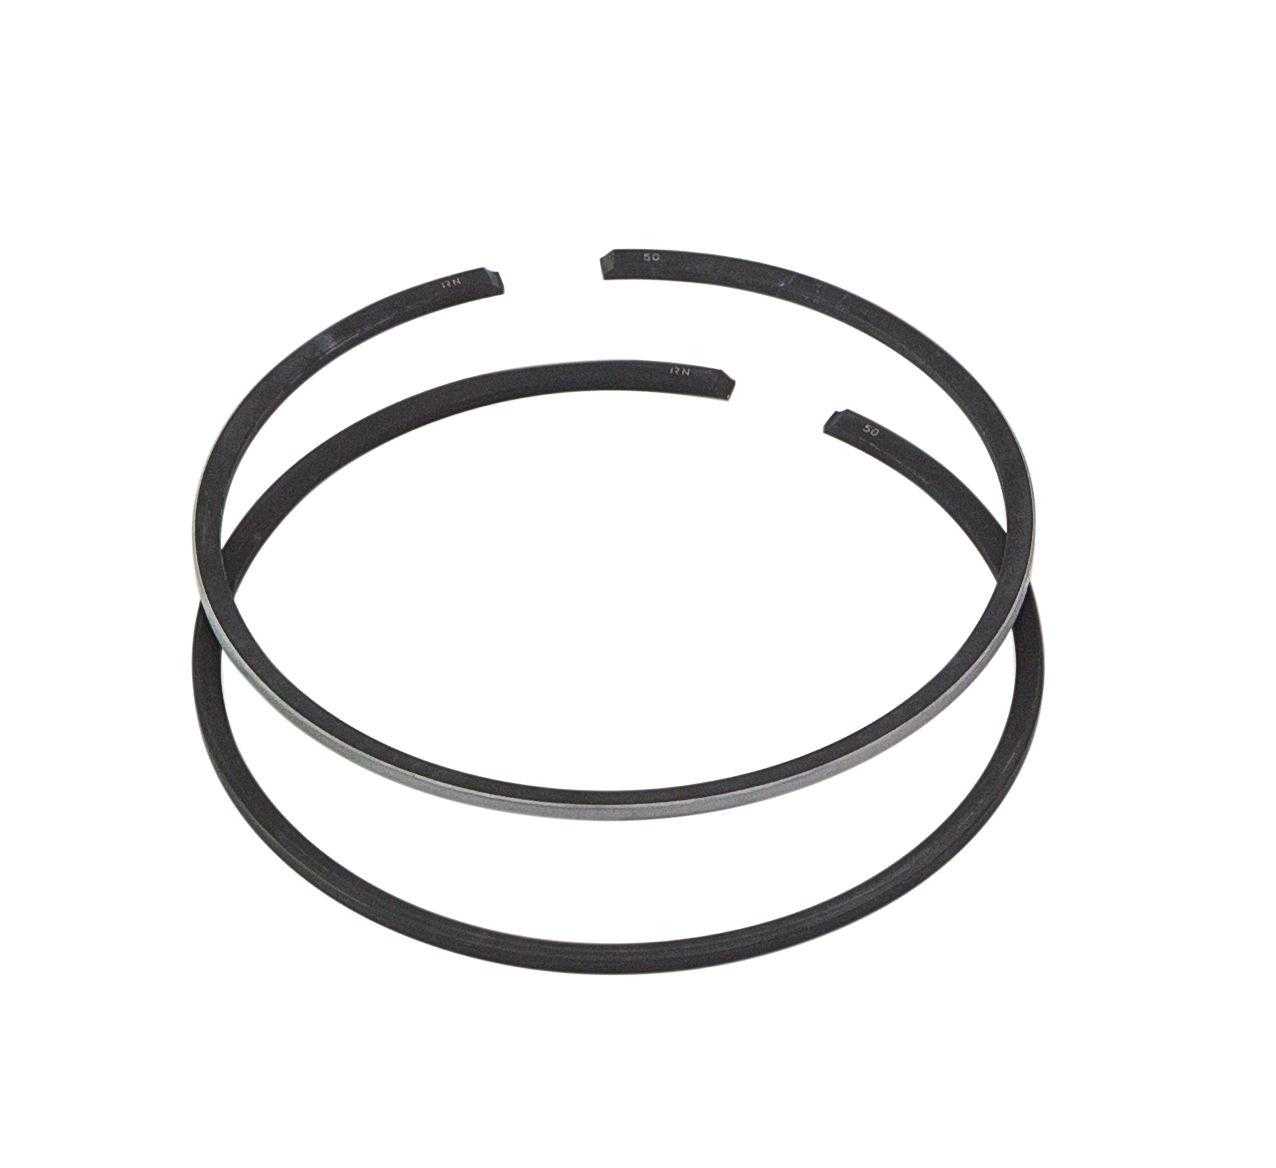 Как заменить поршневые кольца своими руками. поршневые кольца: материалы изготовления, инструменты, методы установки колец, полезные советы.